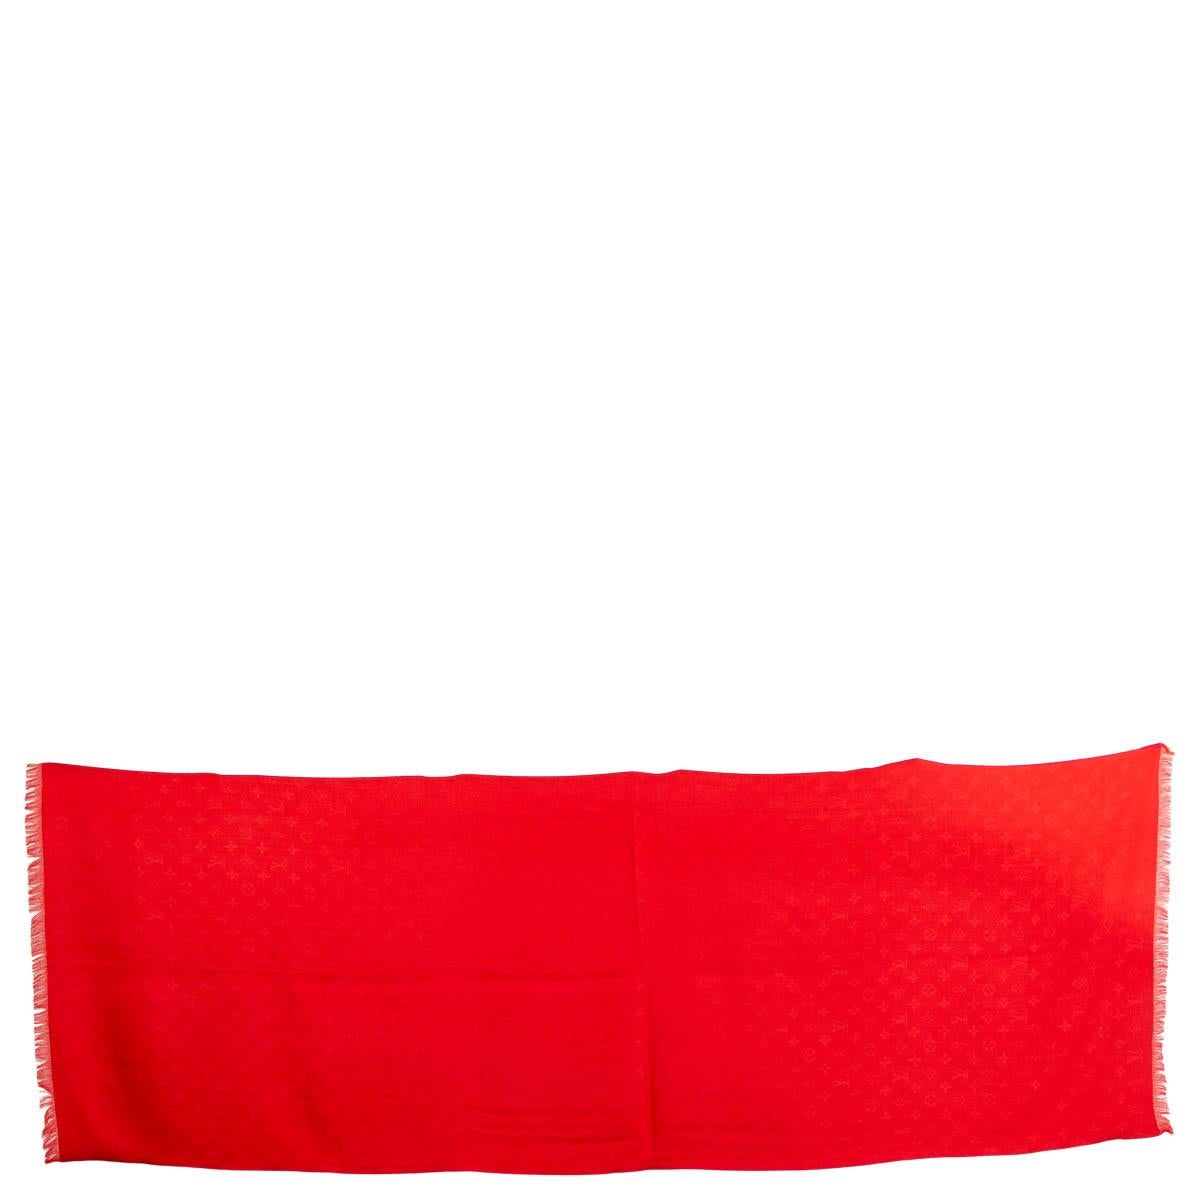 Châle à franges double face Monogram en soie rose (100%) et cachemire rouge (100%) 100% authentique Louis Vuitton. A été porté et est en excellent état. 

Mesures
Largeur	65cm (25.4in)
Longueur	180cm (70.2in)

Toutes nos annonces comprennent